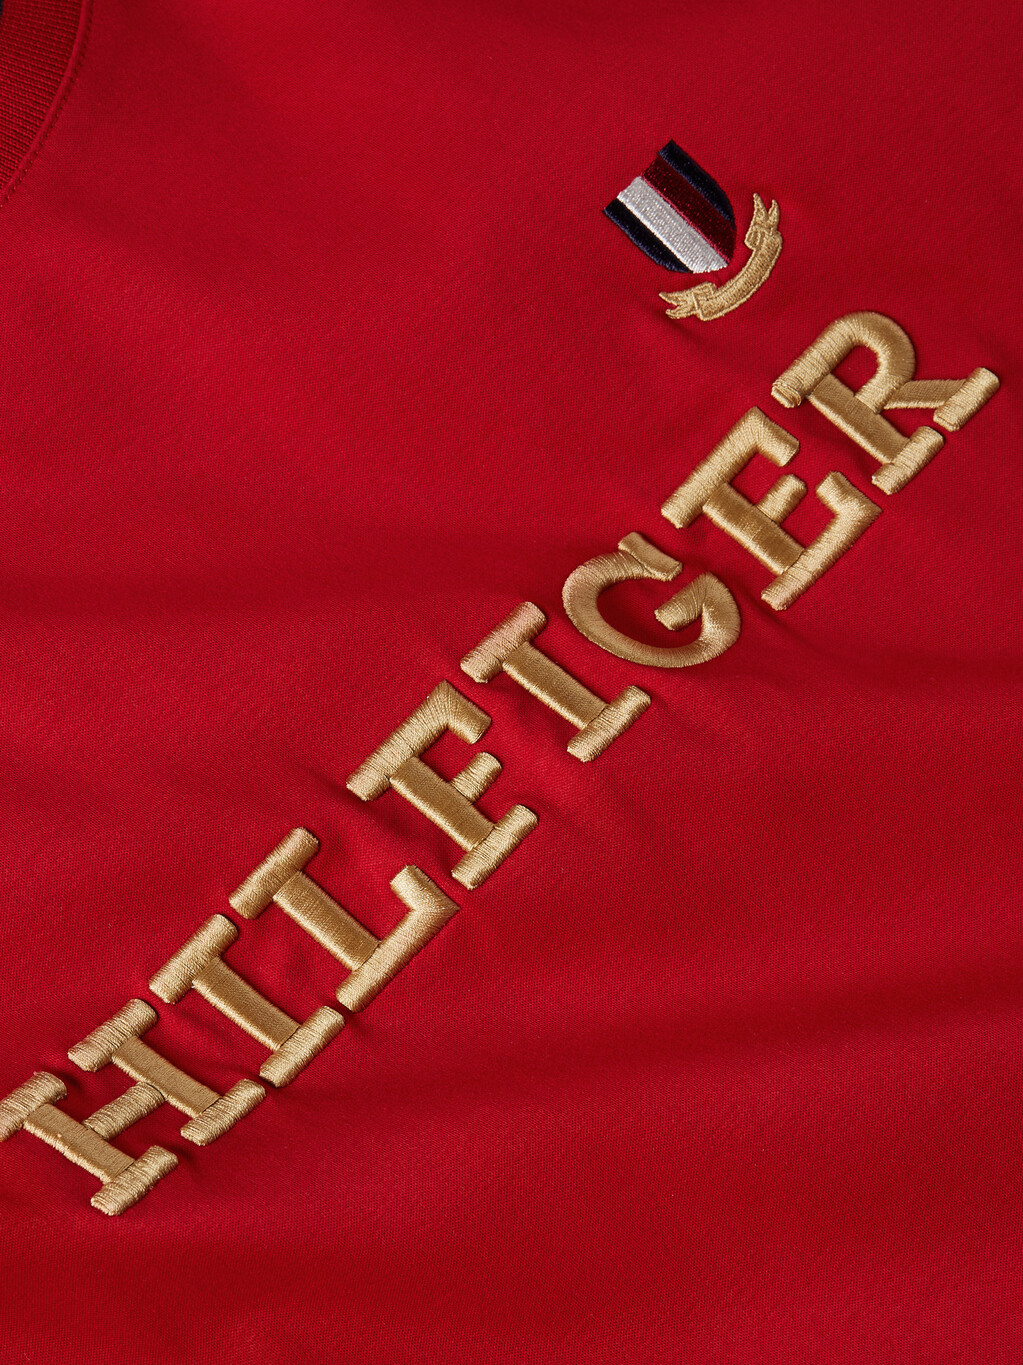 Hilfiger 標誌 T 恤, Arizona Red, hi-res